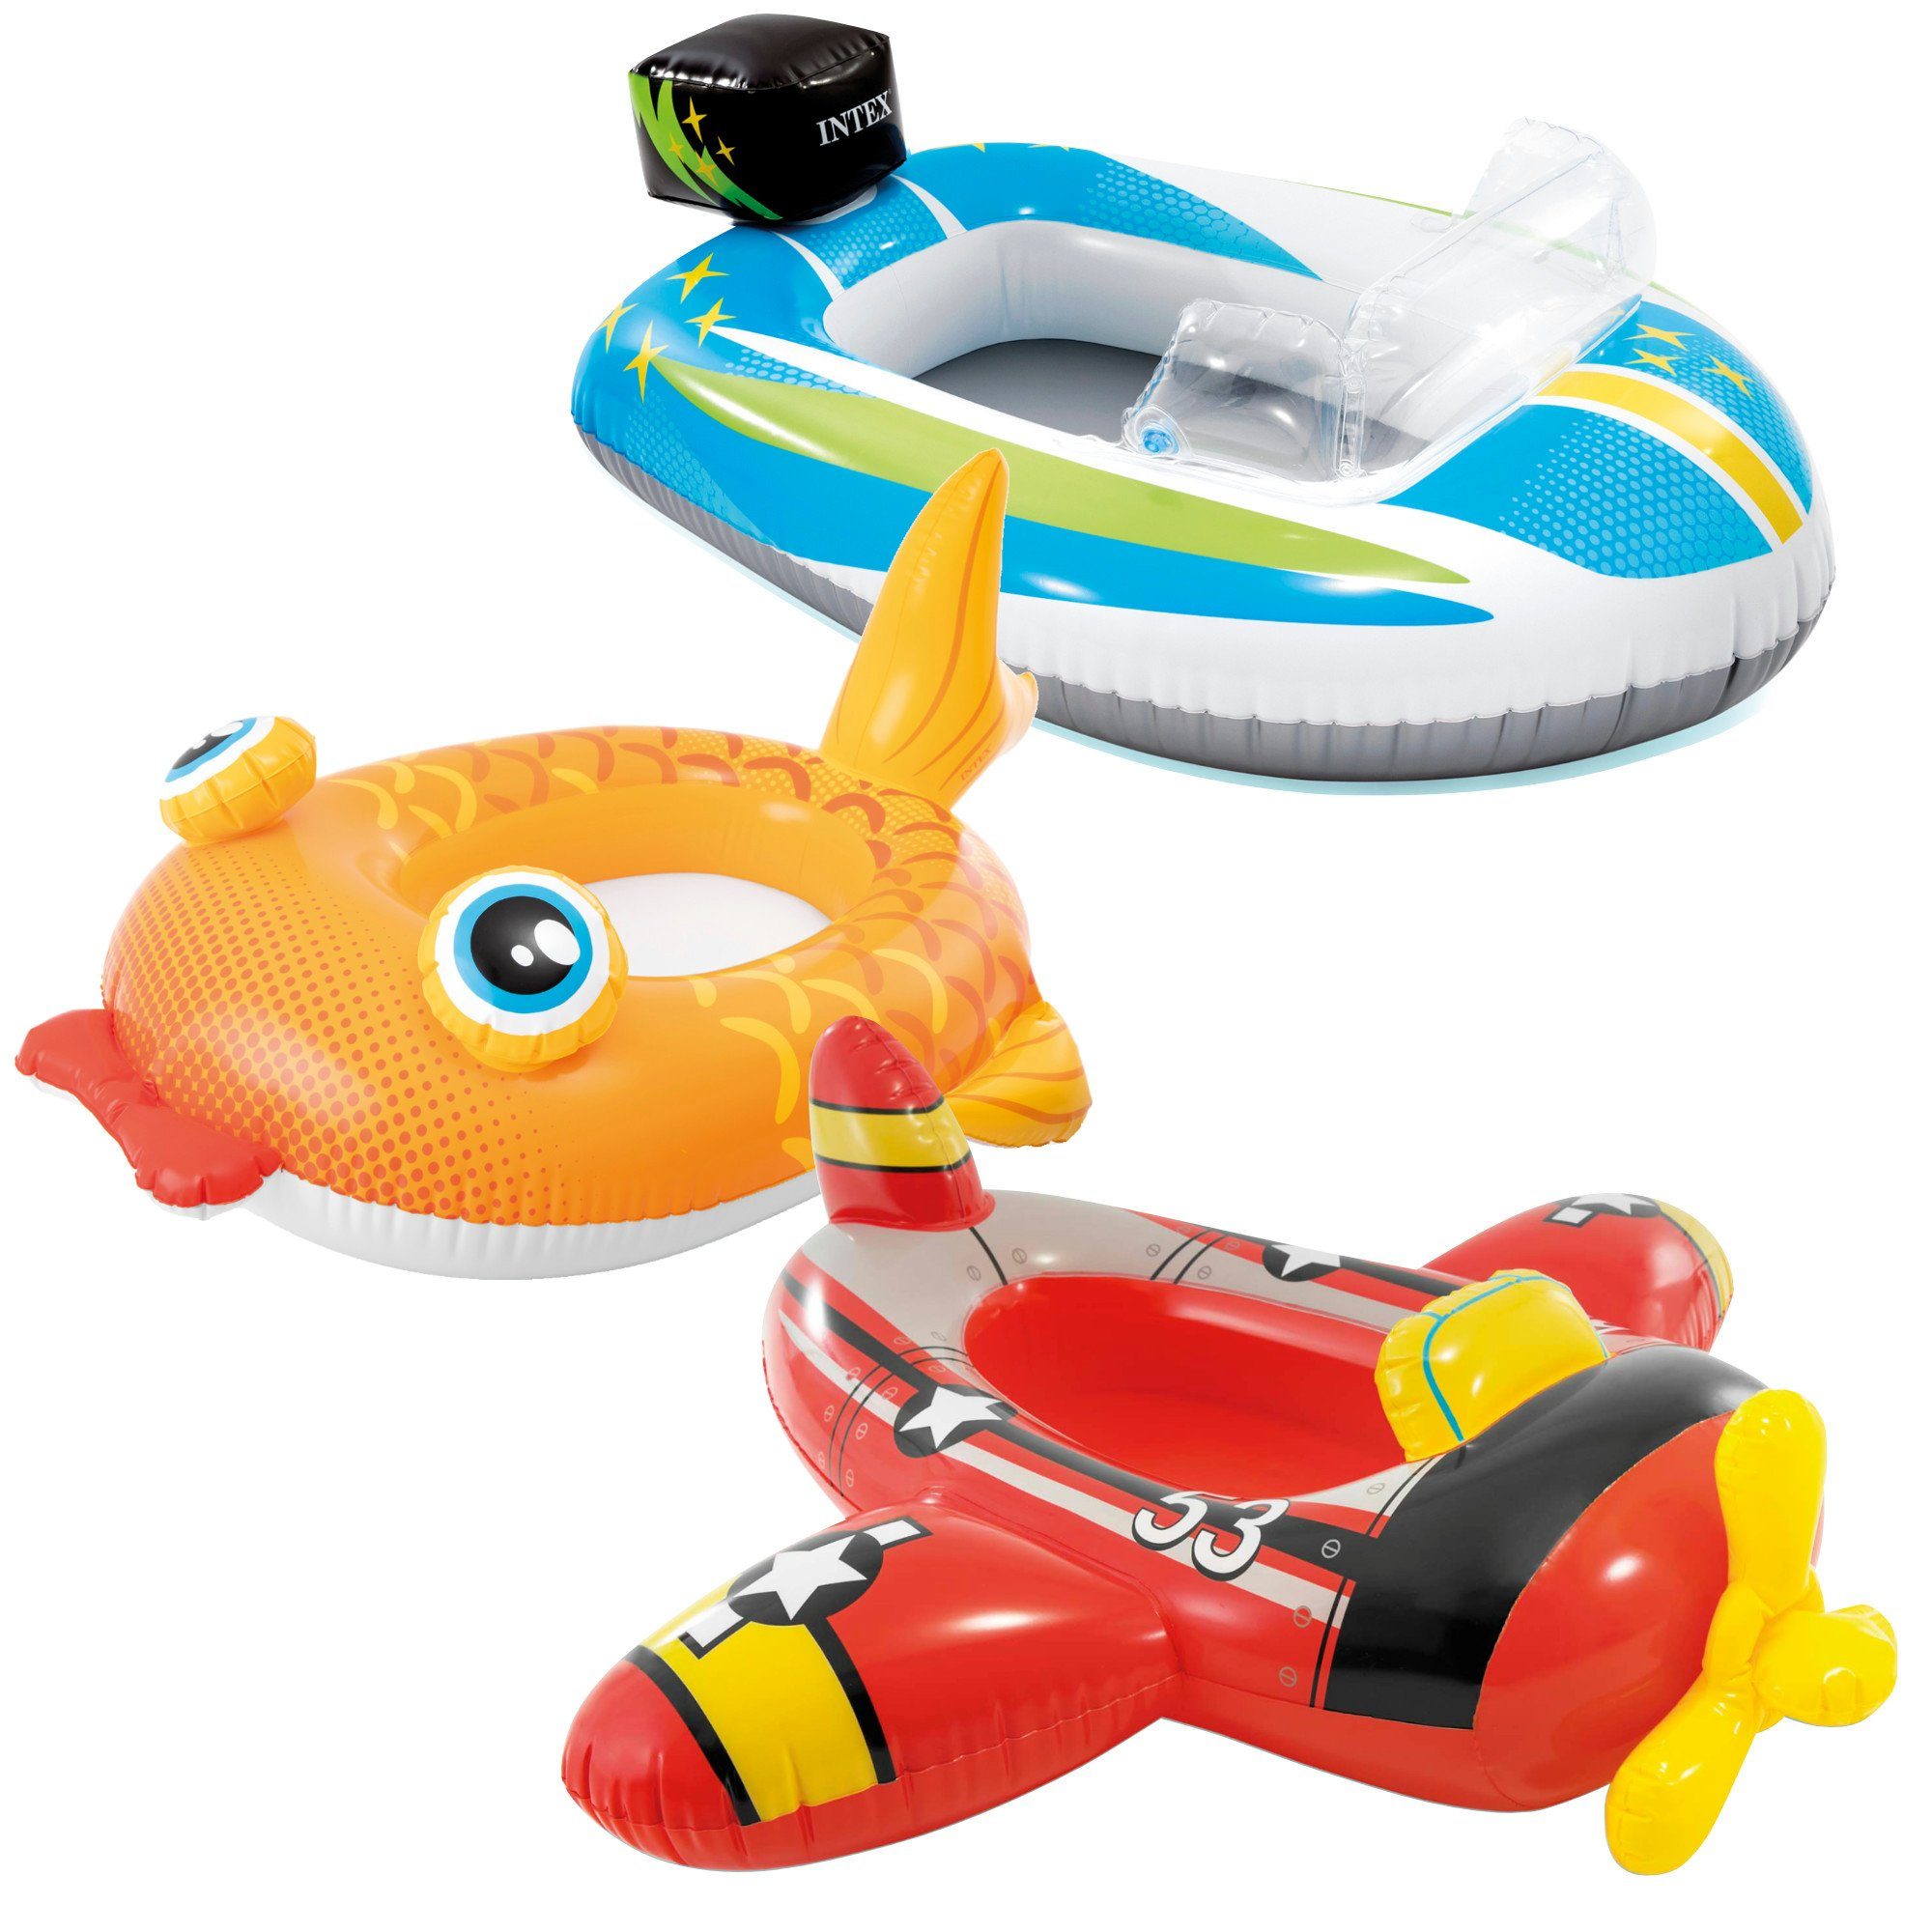 Intex Kinder-Schlauchboot INTEX Pool Cruisers, Kinder-/Babysitze für den Pool